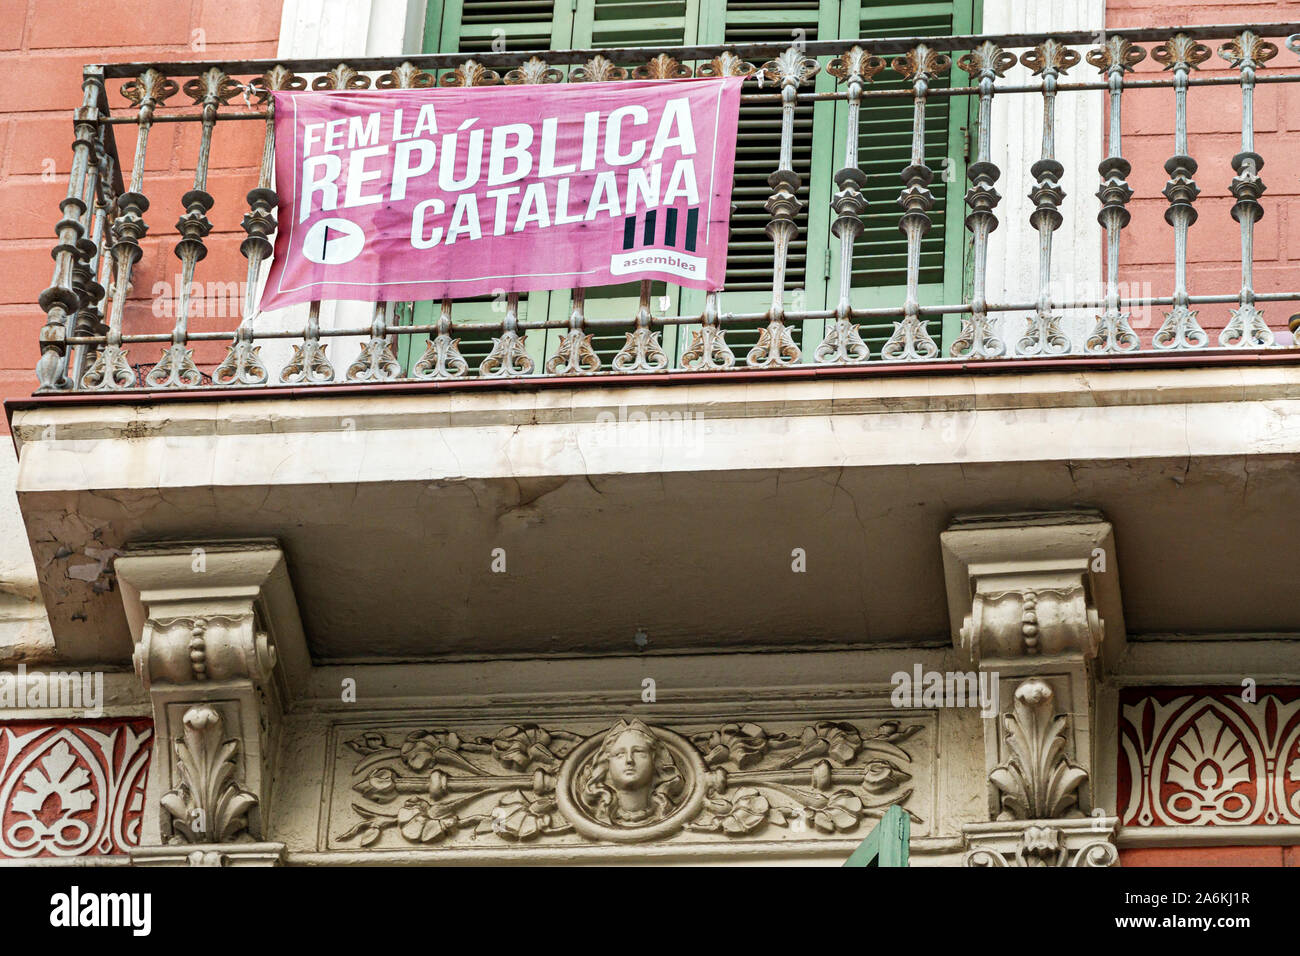 Barcelone Espagne,Catalogne Gracia,quartier,balcon,mouvement d'indépendance catalan,FEM la Republica Catalana,bannière de protestation politique,ES190820138 Banque D'Images